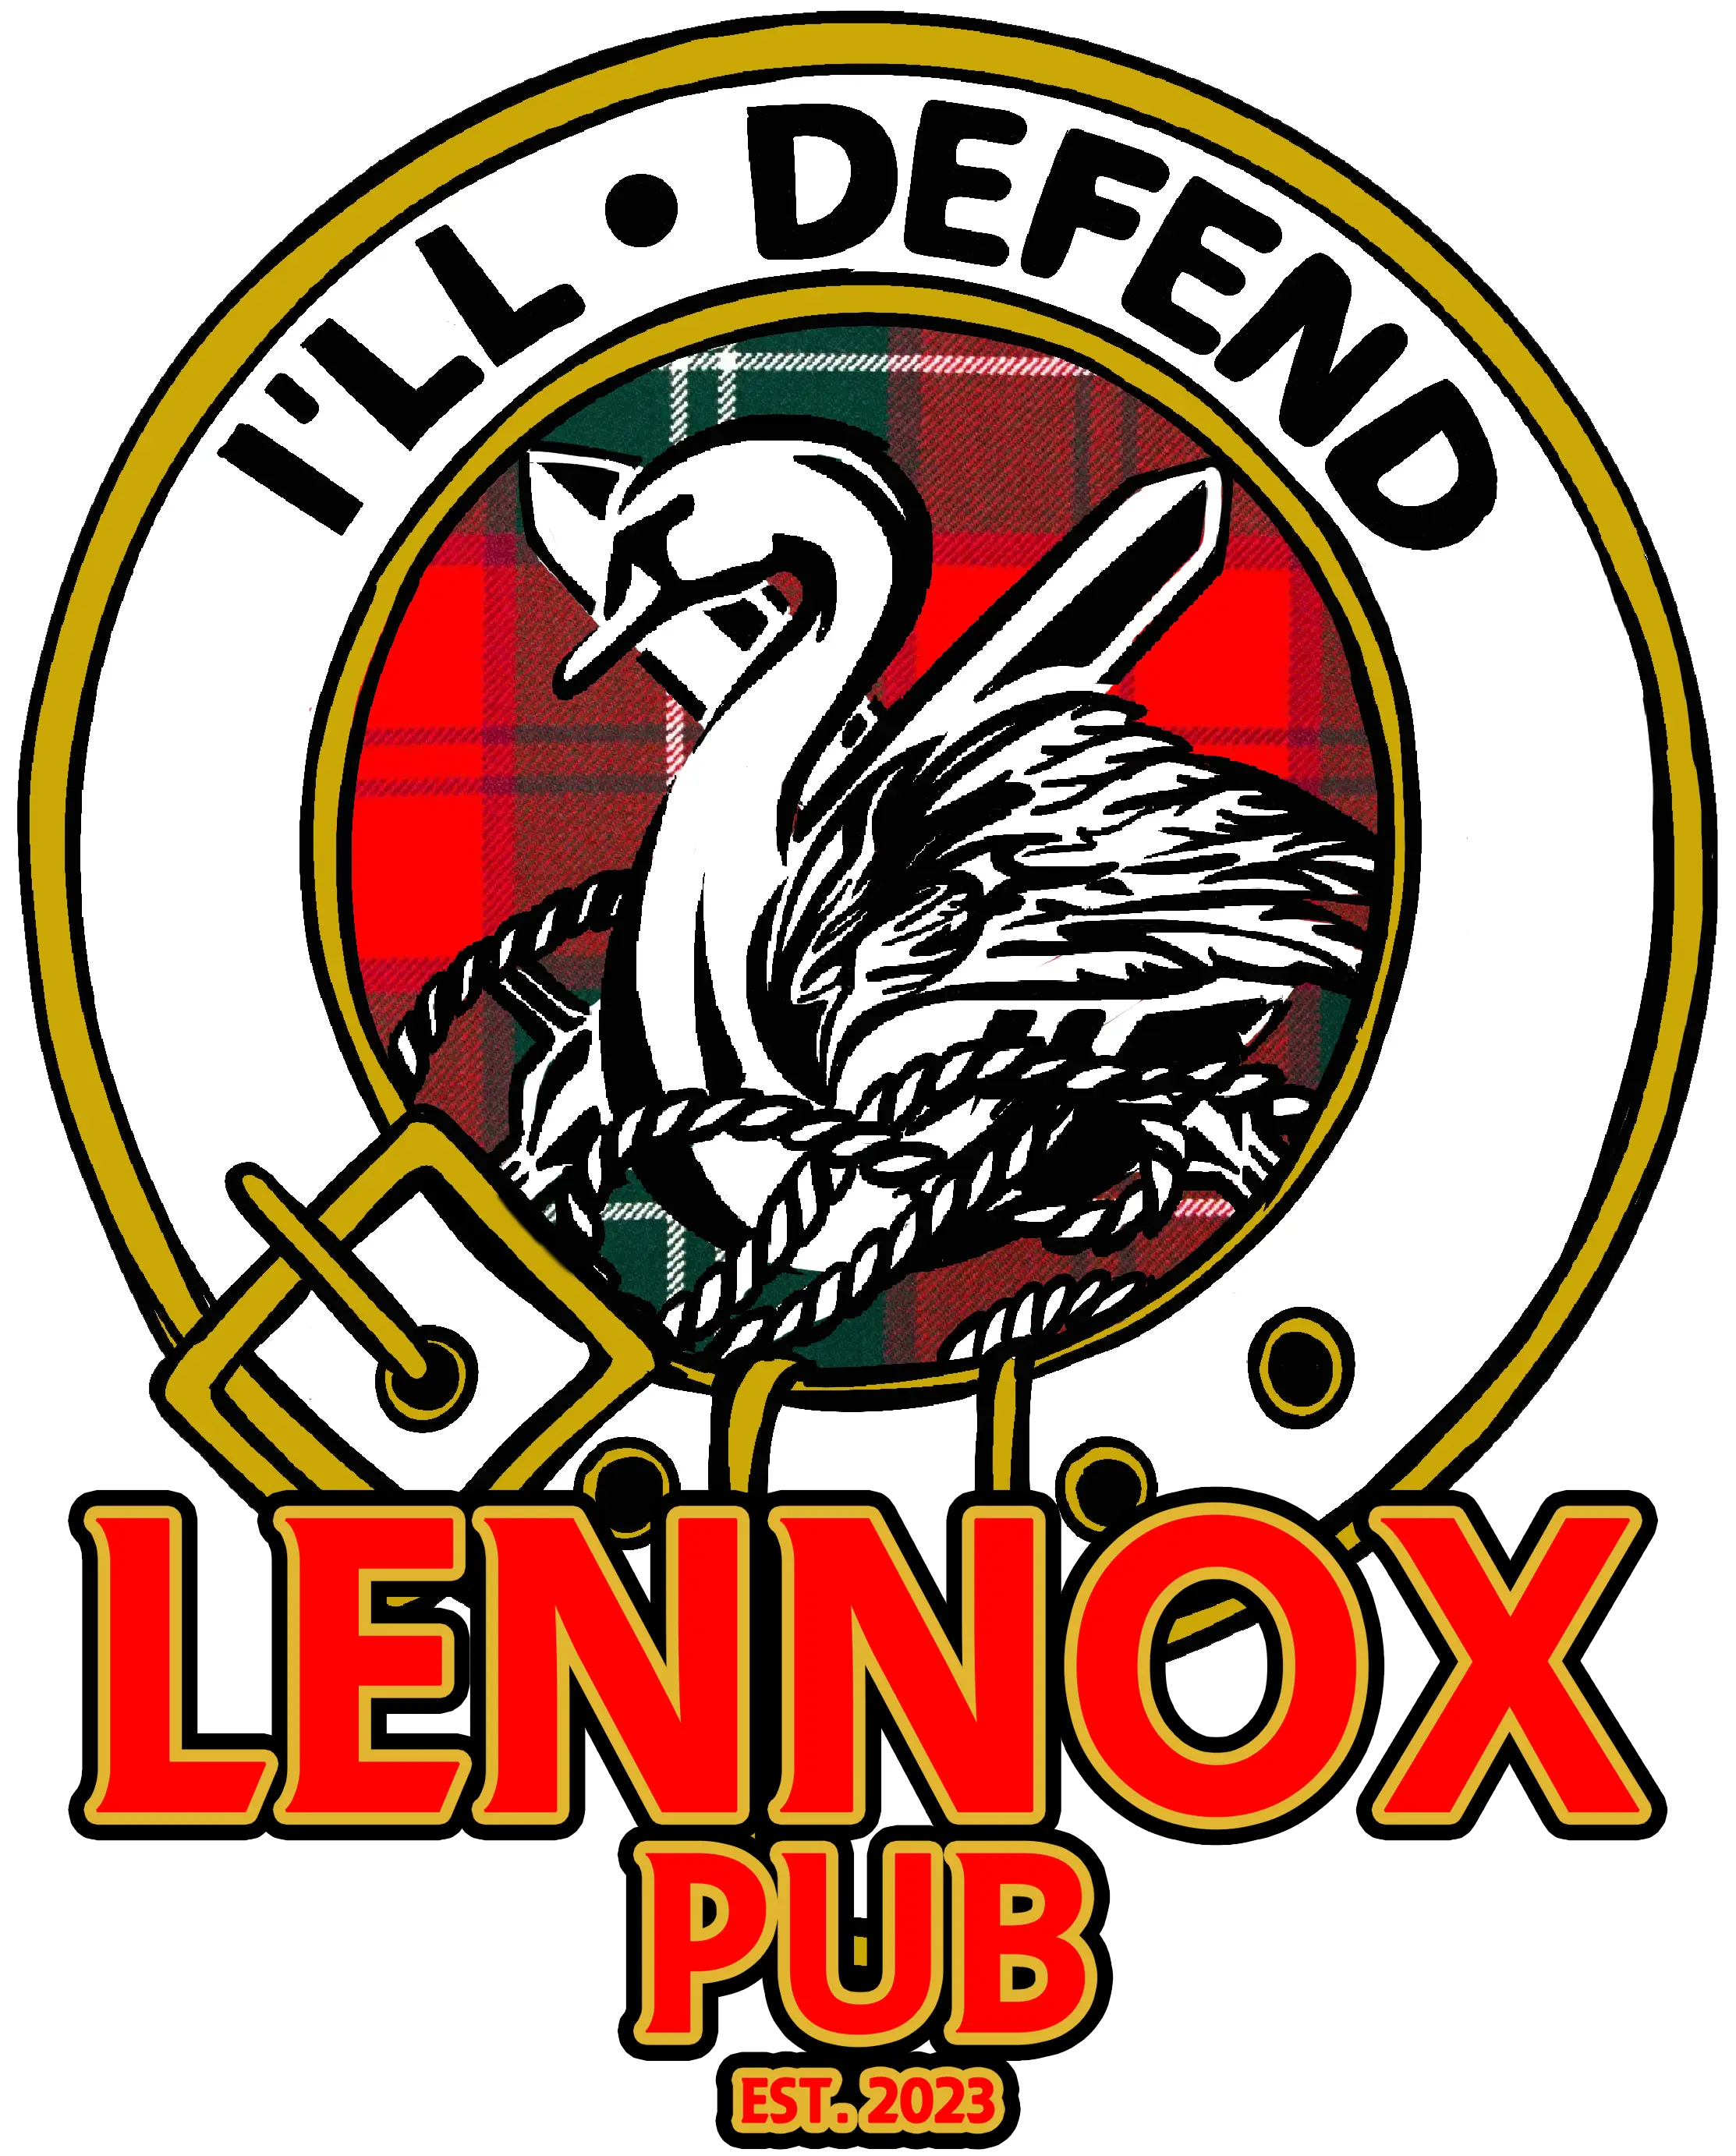 Lennox Pub Logo